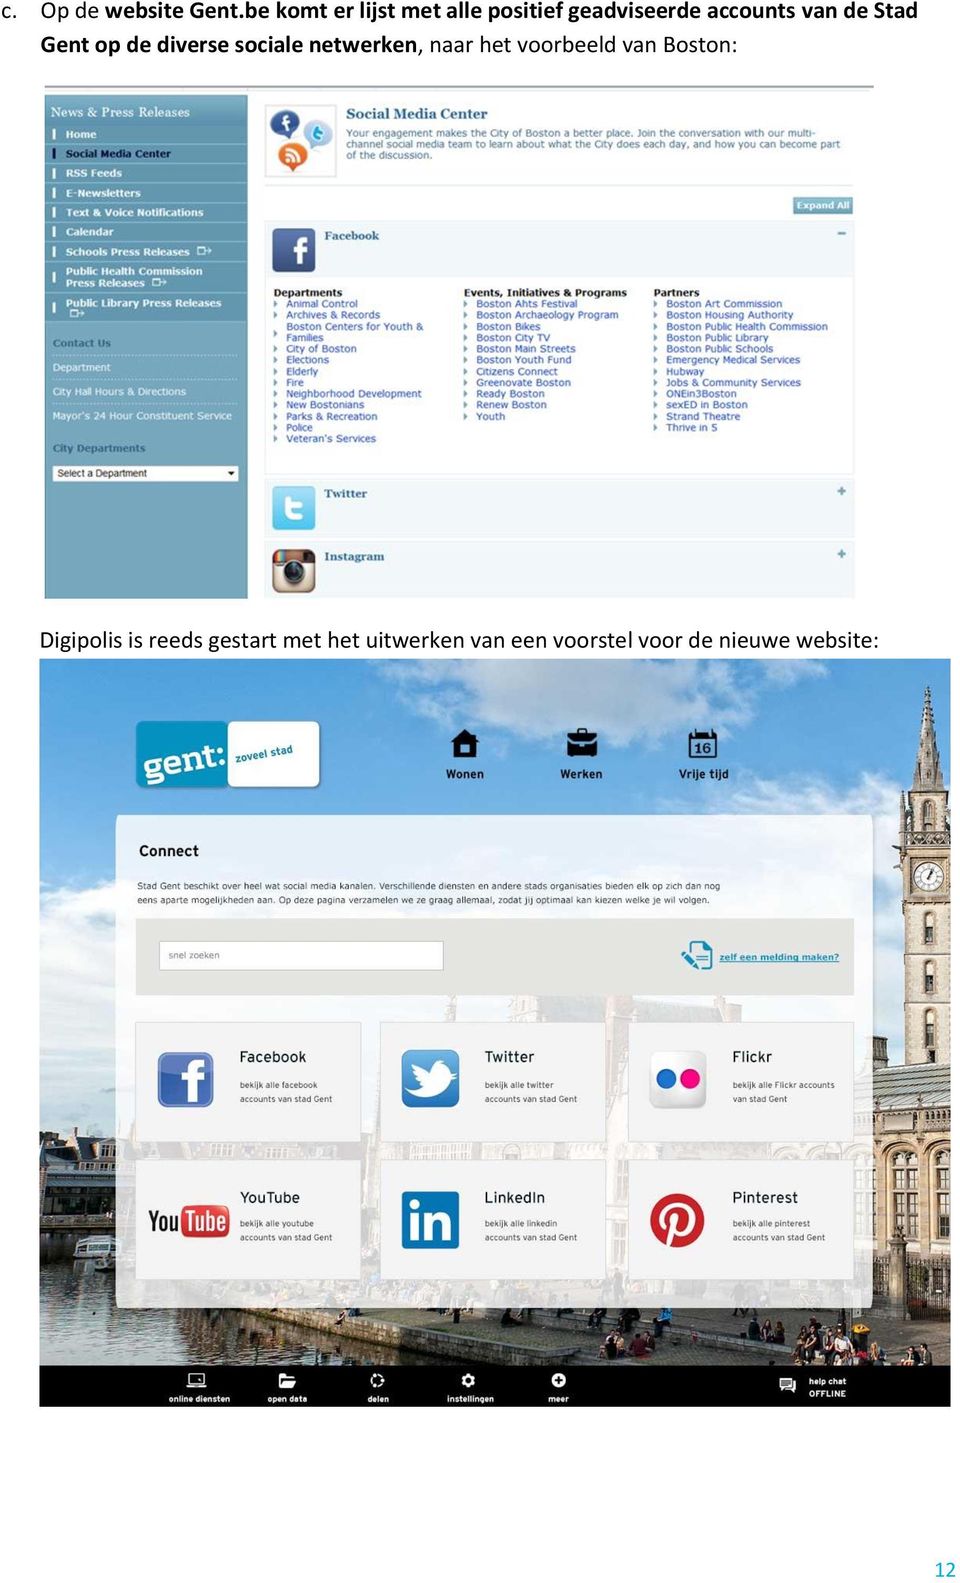 de Stad Gent op de diverse sociale netwerken, naar het